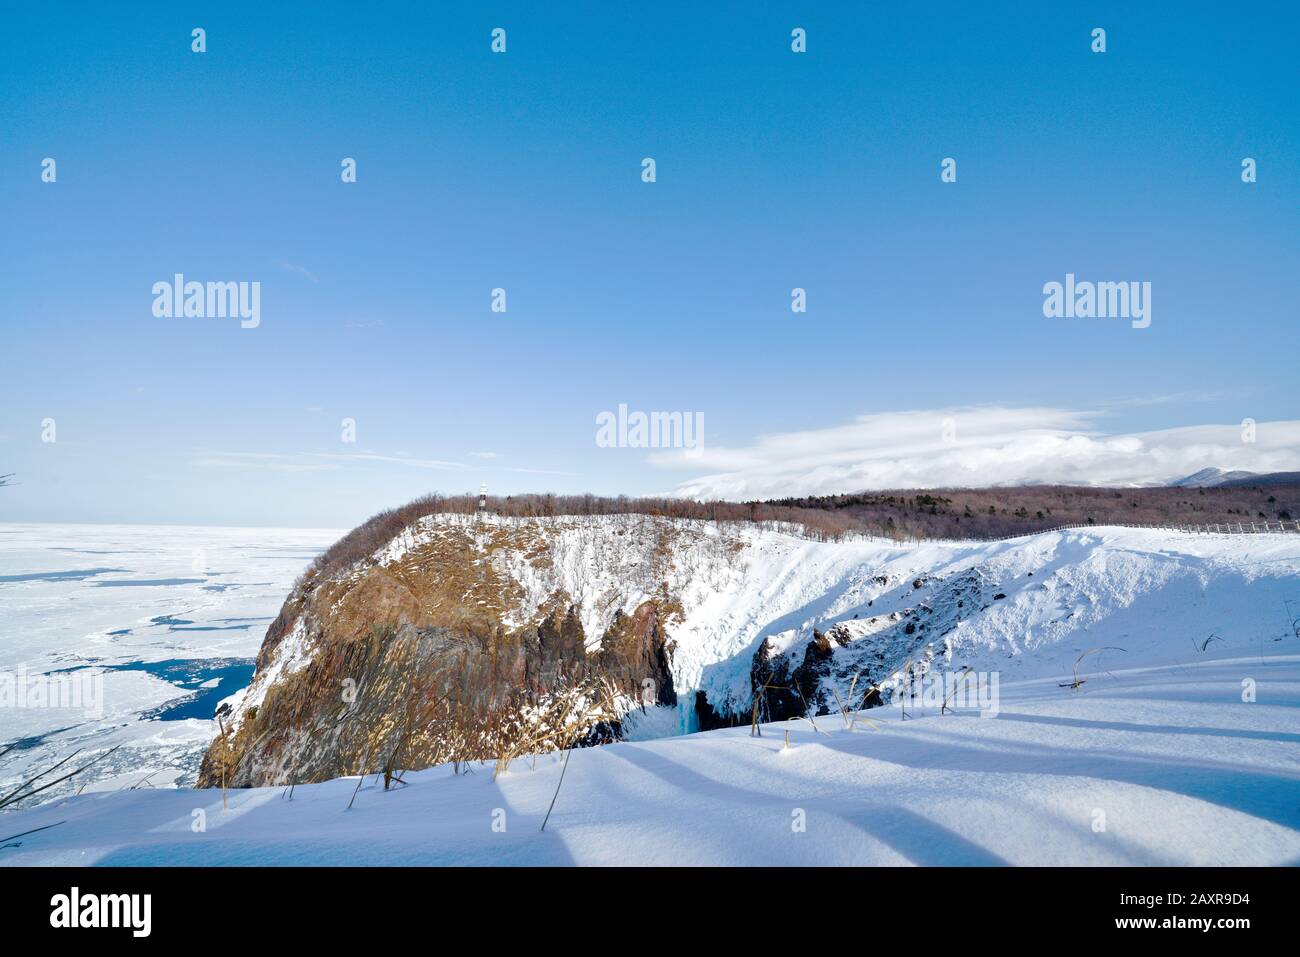 Vue panoramique sur les chutes de Furepe, le cap d'utoro, le phare d'utoro et la mer d'okhotsk recouverte de glace et de neige en hiver, Shiretoko, Hokkai Banque D'Images